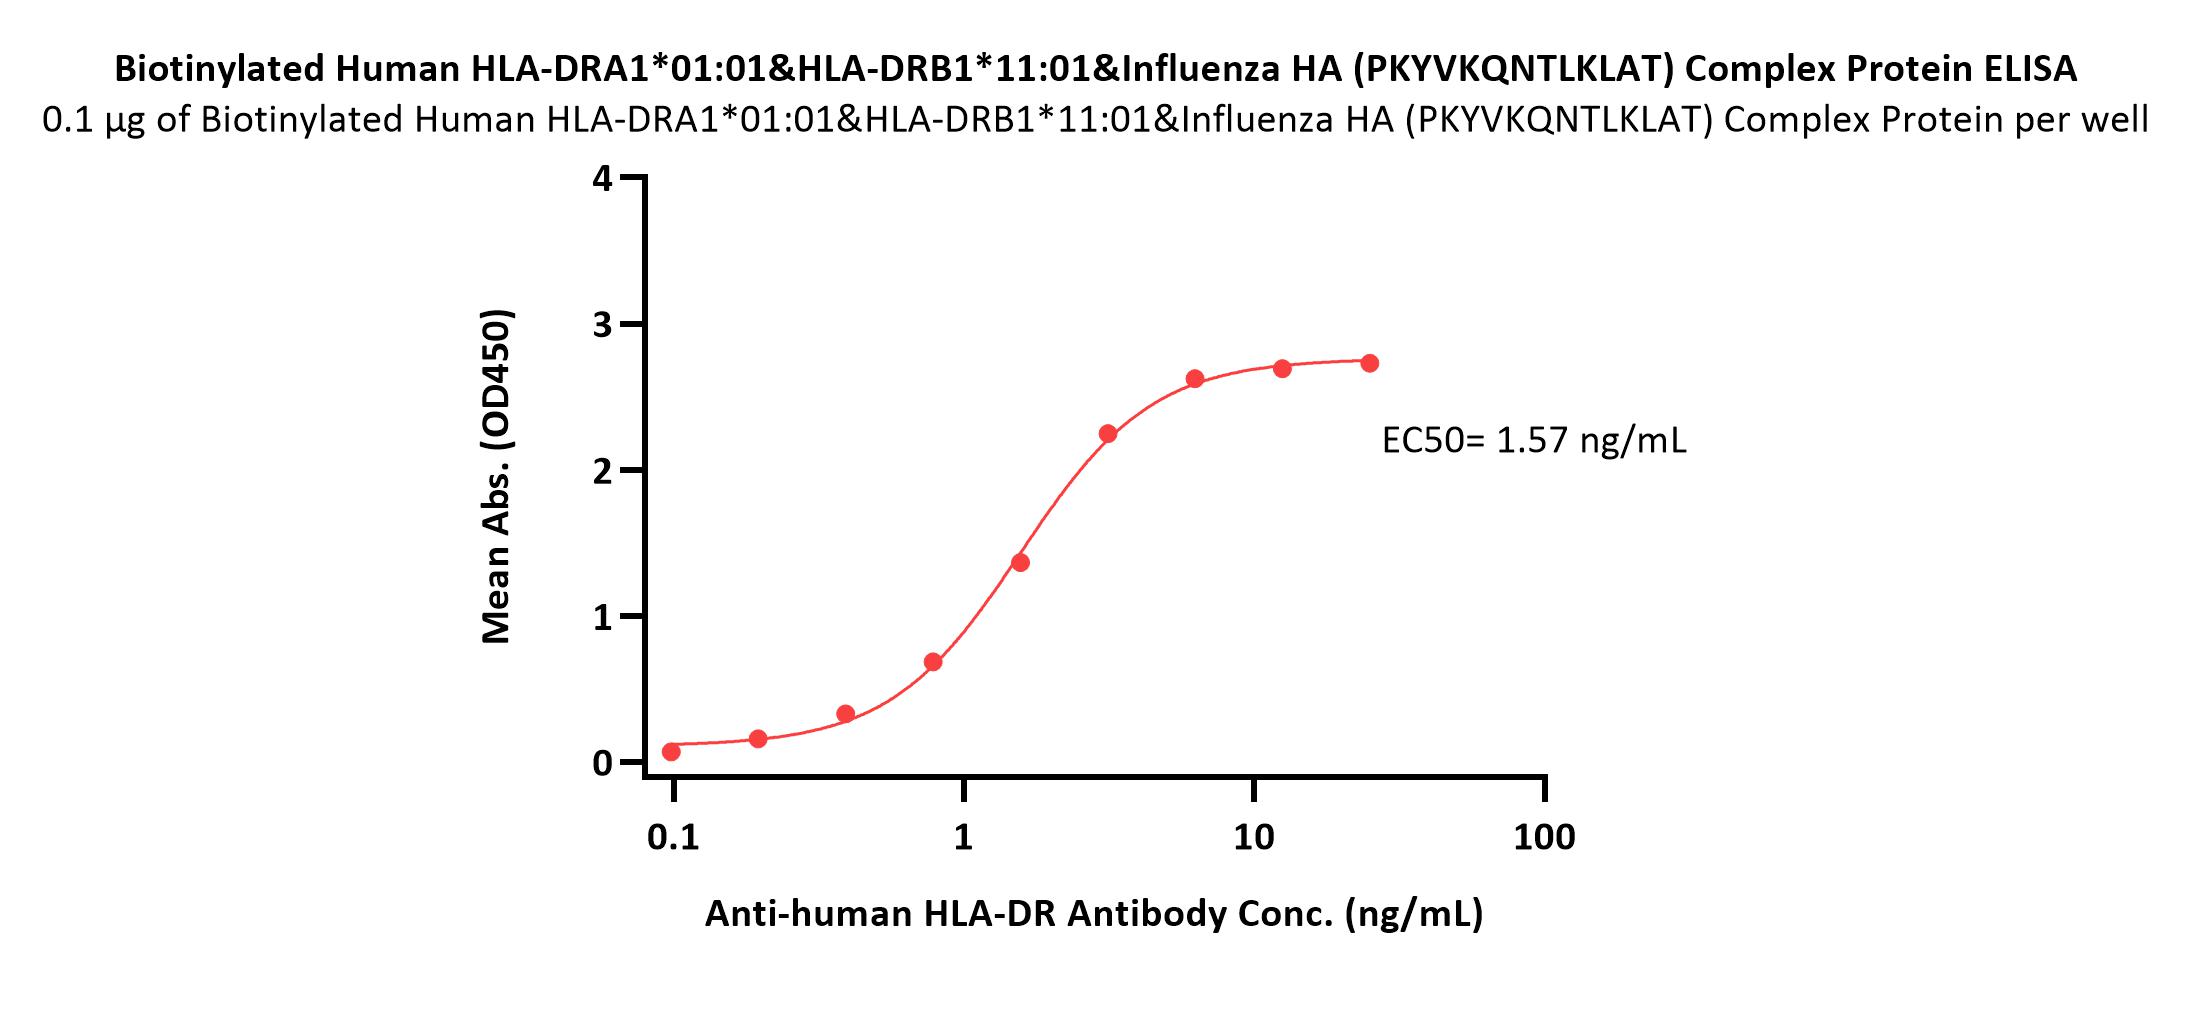 HLA-DRA1*0101 & HLA-DRB1*1101 & Influenza HA (PKYVKQNTLKLAT) ELISA